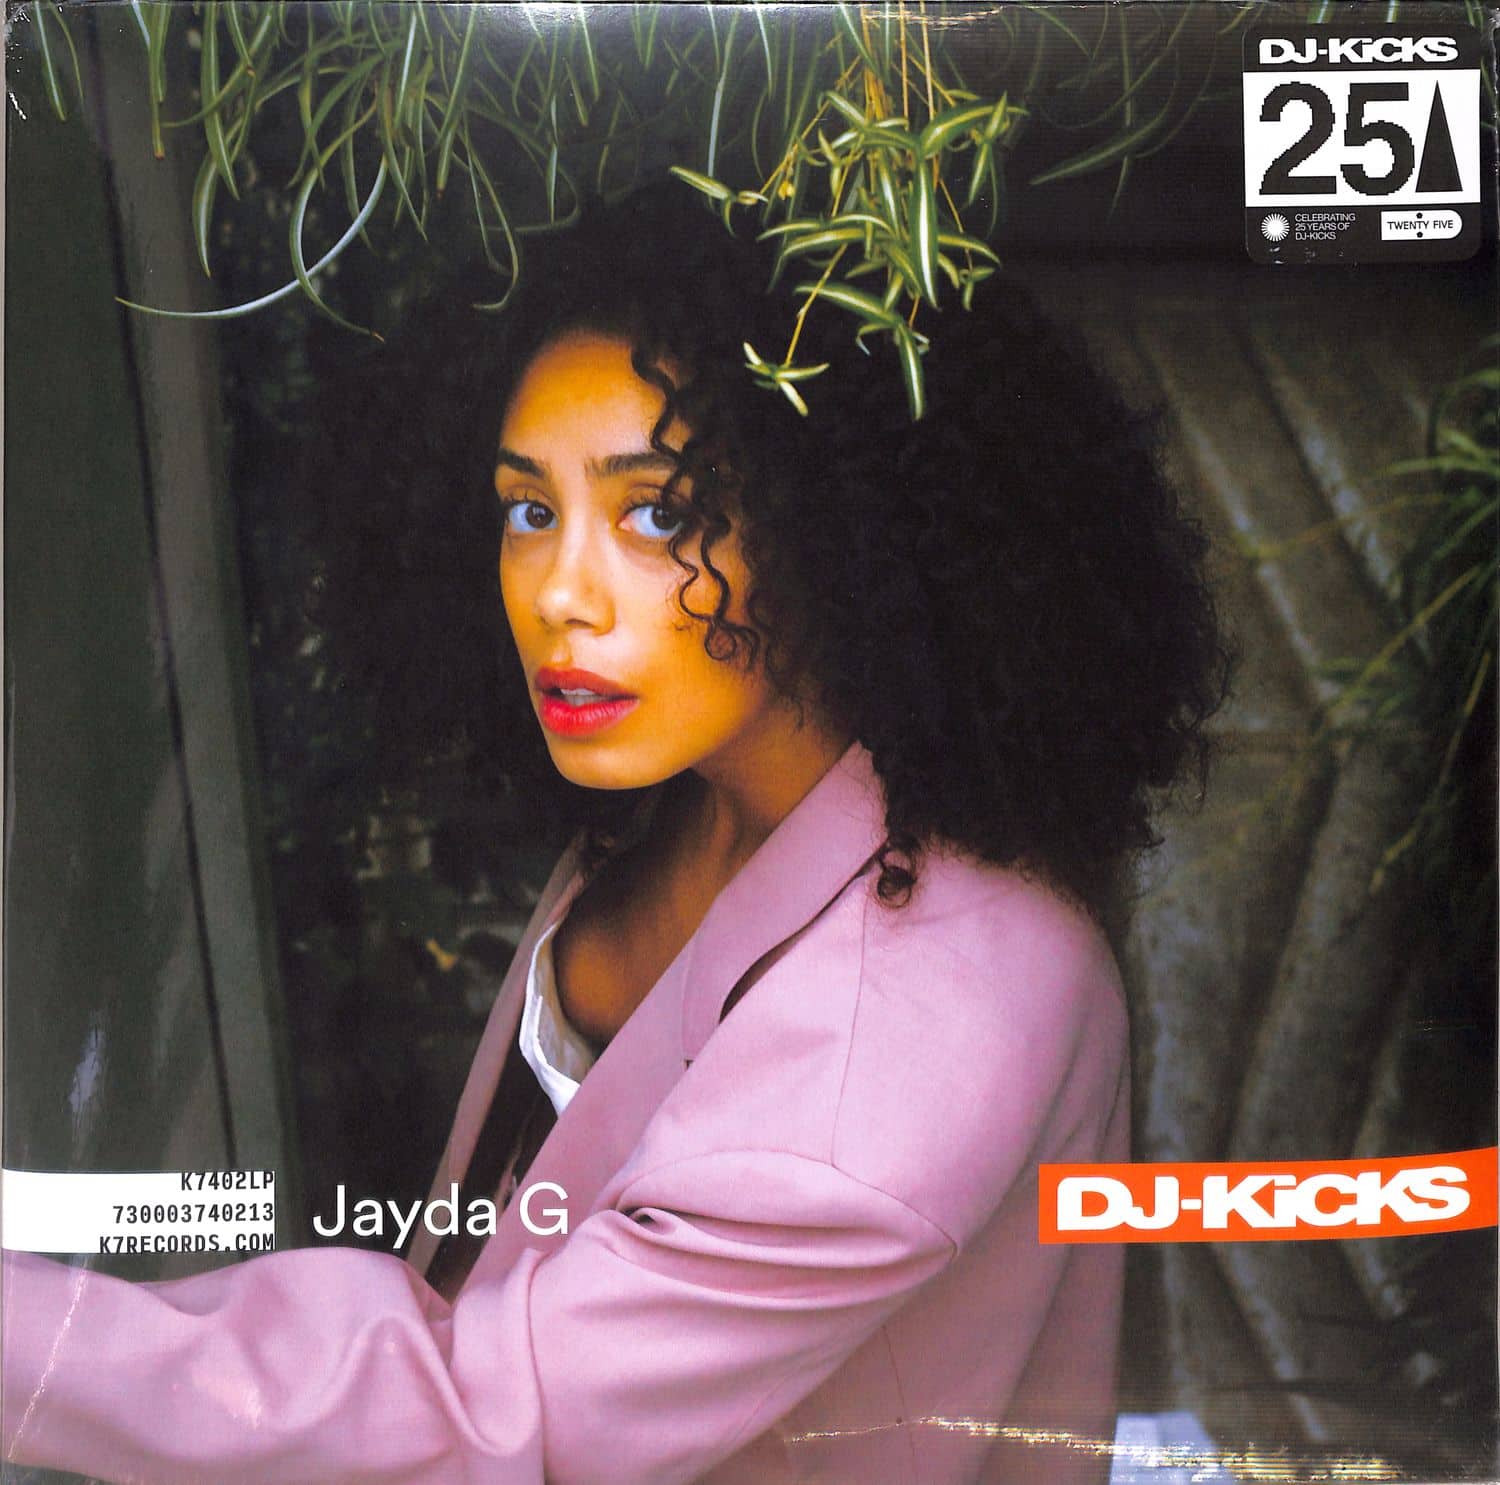 Jayda G - DJ-KICKS 